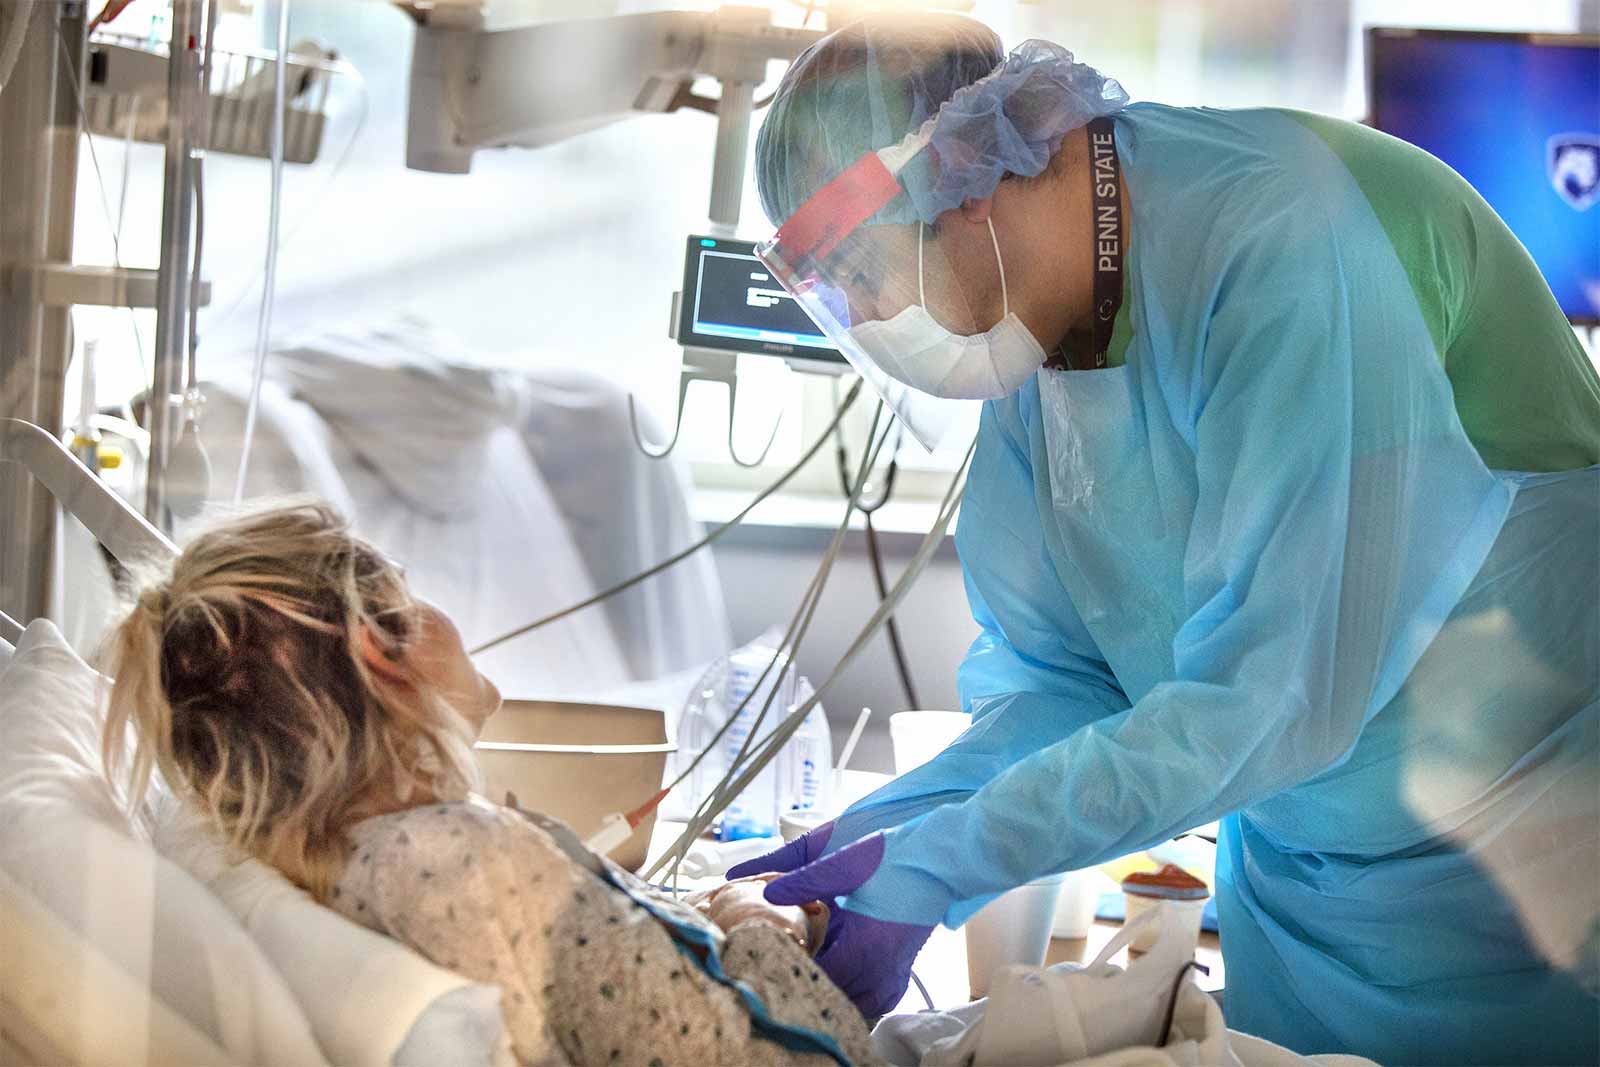 Un cuidador que lleva una bata, máscara, protector facial y guantes, sostiene la mano de una paciente que está en una cama de hospital. Un monitor y una ventana se encuentran entre los elementos en el trasfondo.